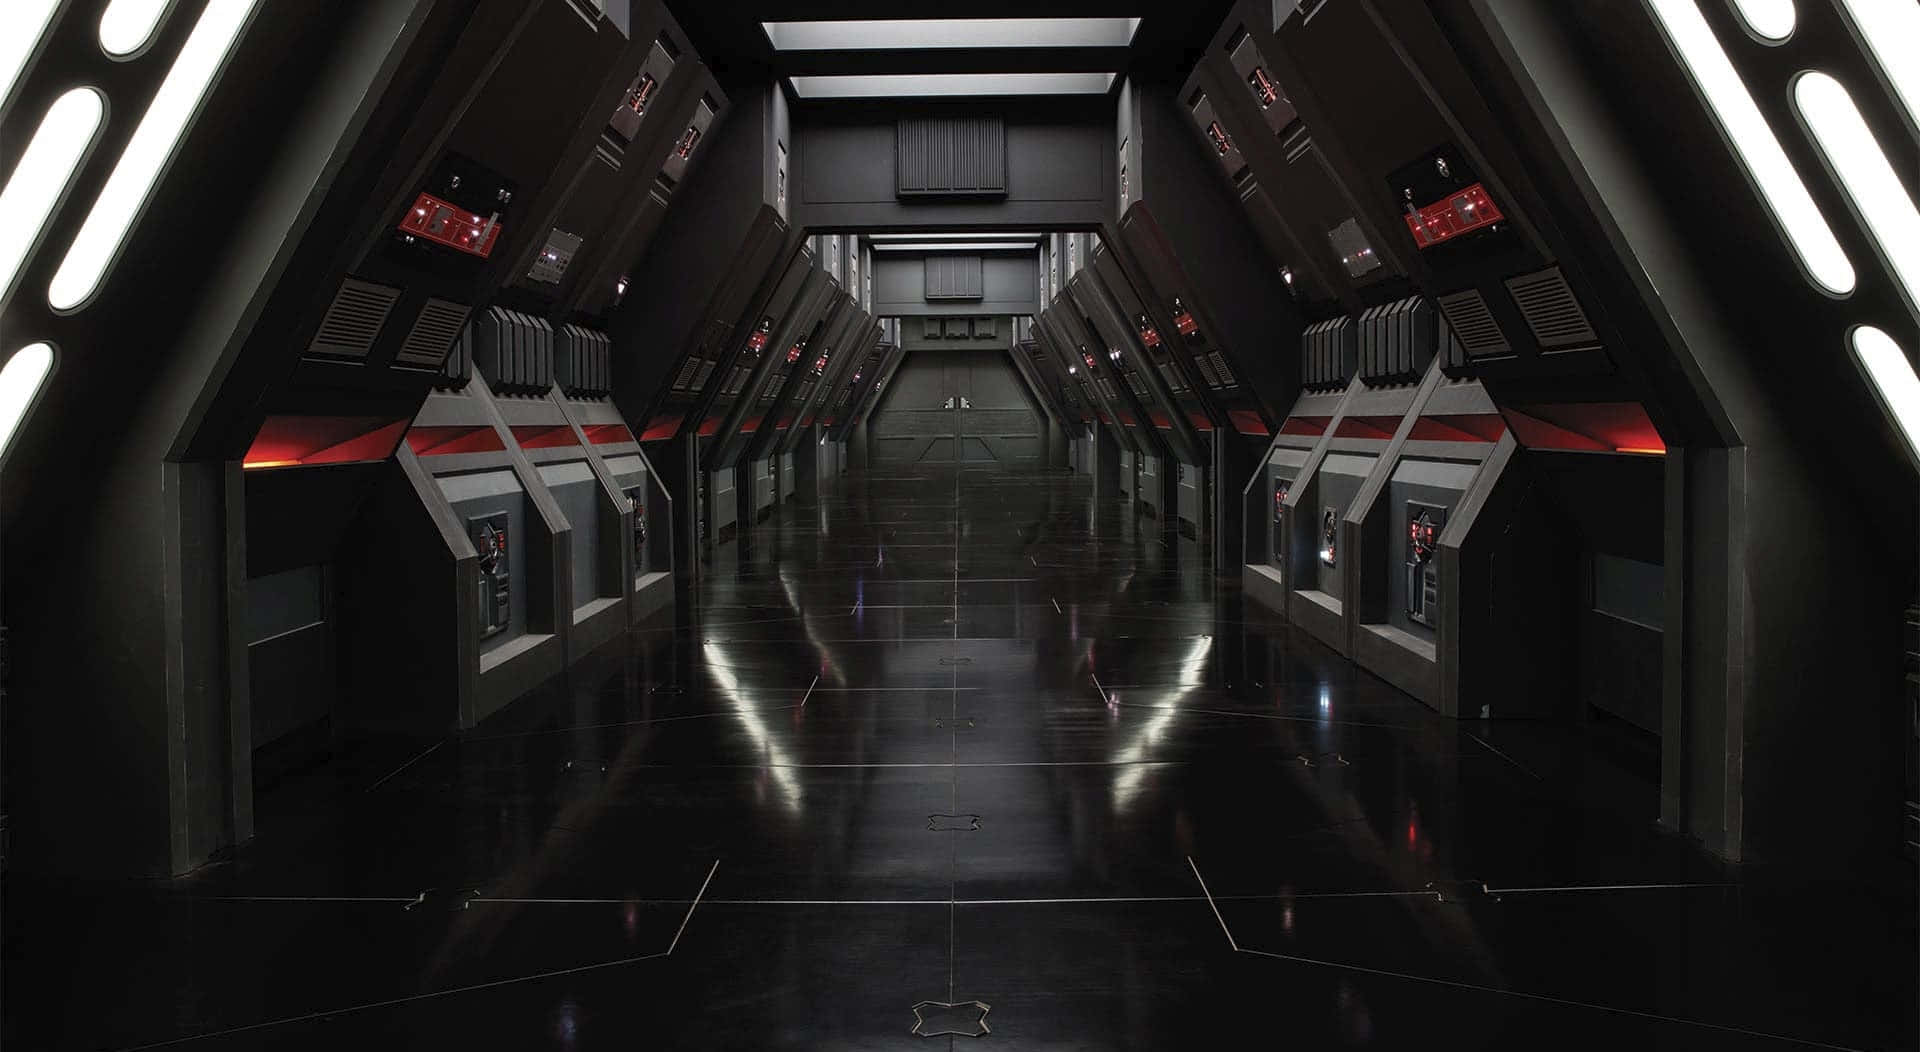 Fondode Pantalla De Star Wars Para Zoom: Interior De La Nave Sith.